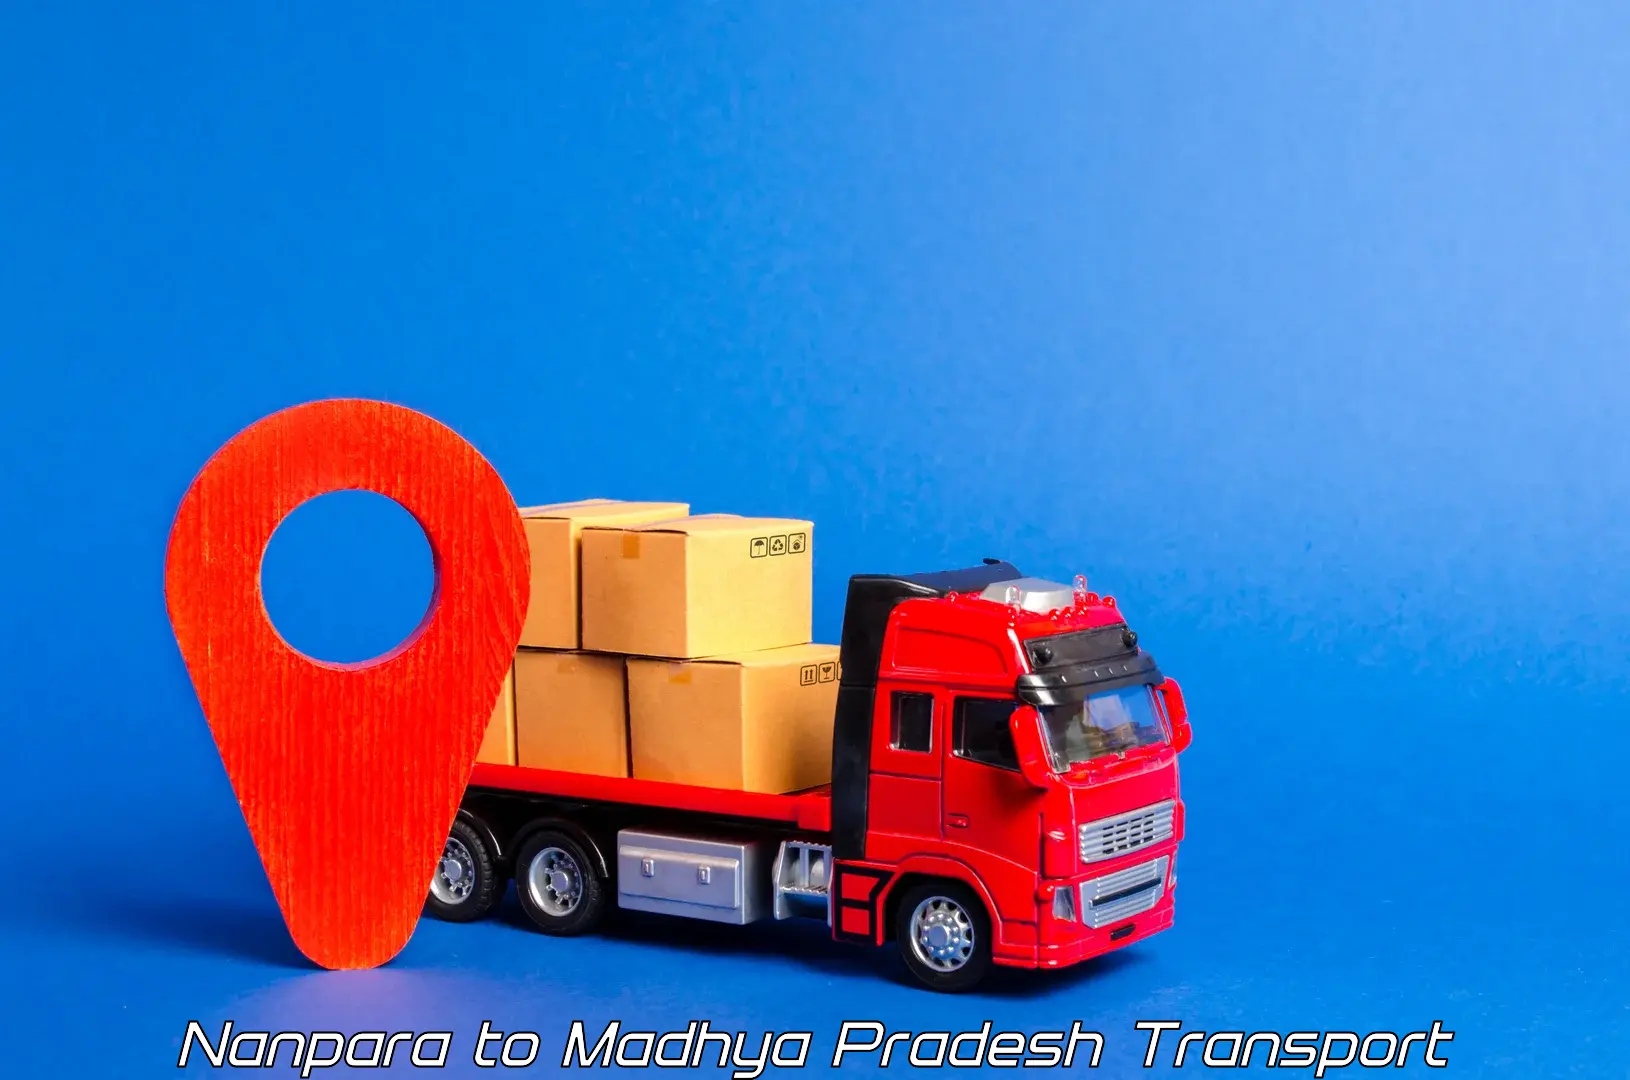 Cargo transport services Nanpara to Khandwa